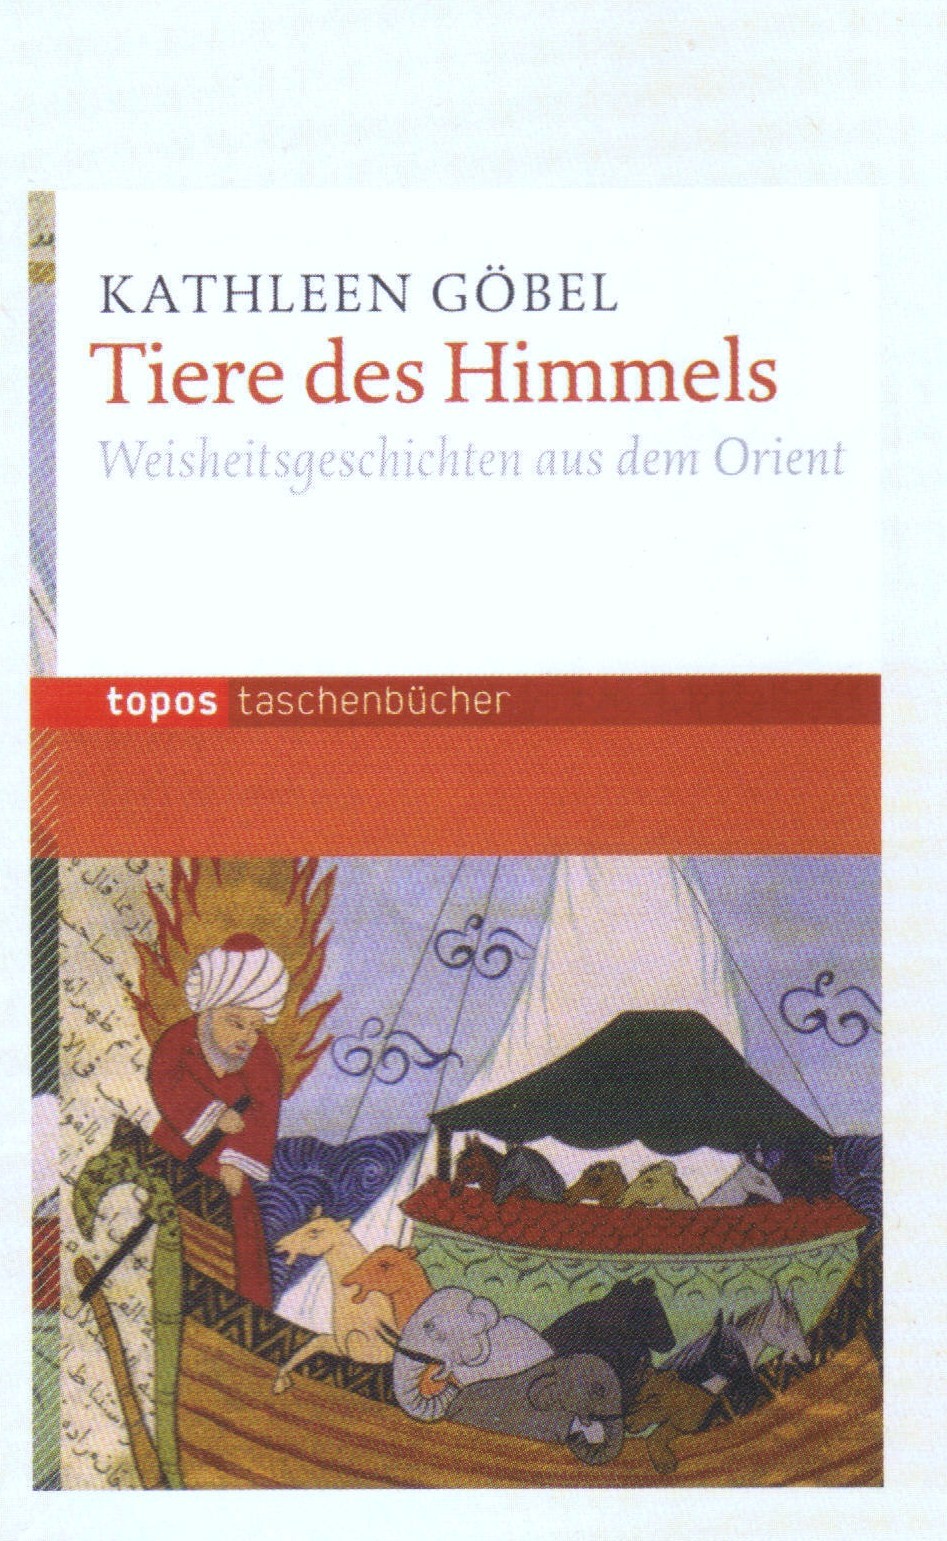 Buchcover Kathleen Göbel: "Tiere des Himmels – Weisheitsgeschichten aus dem Orient"